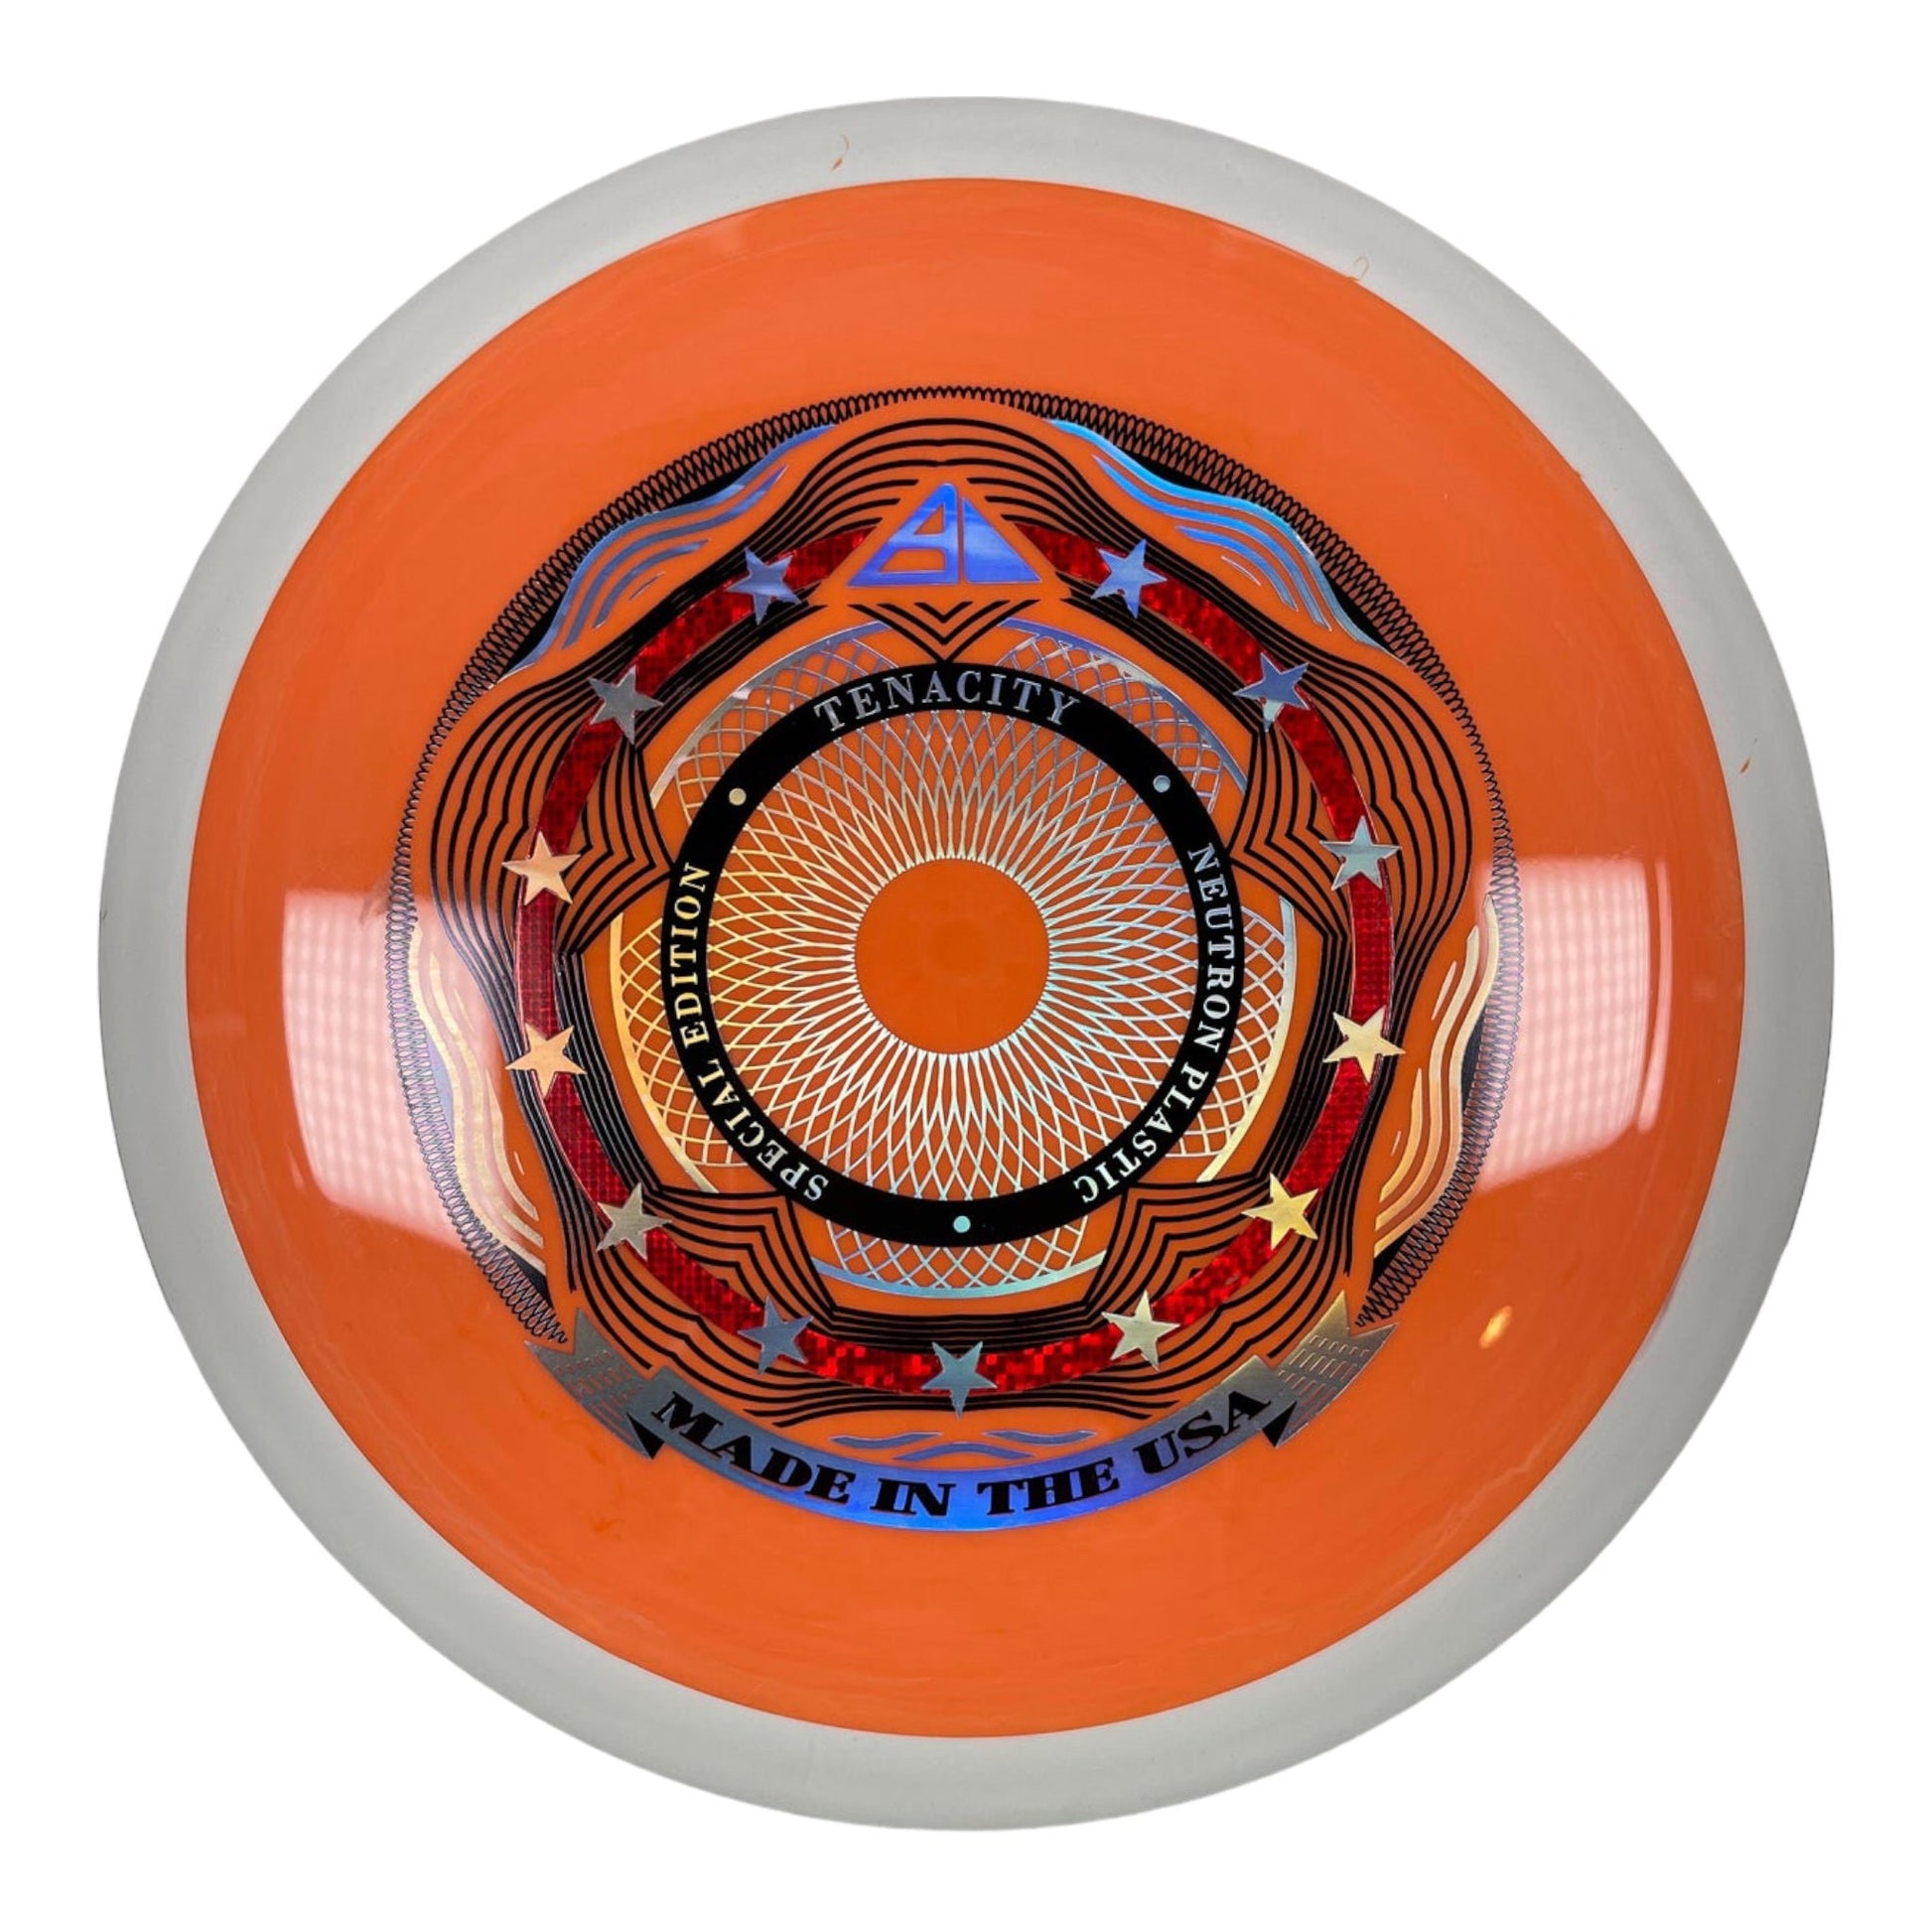 Axiom Discs Tenacity | Neutron | Orange/White 173-174g (Special Edition) Disc Golf